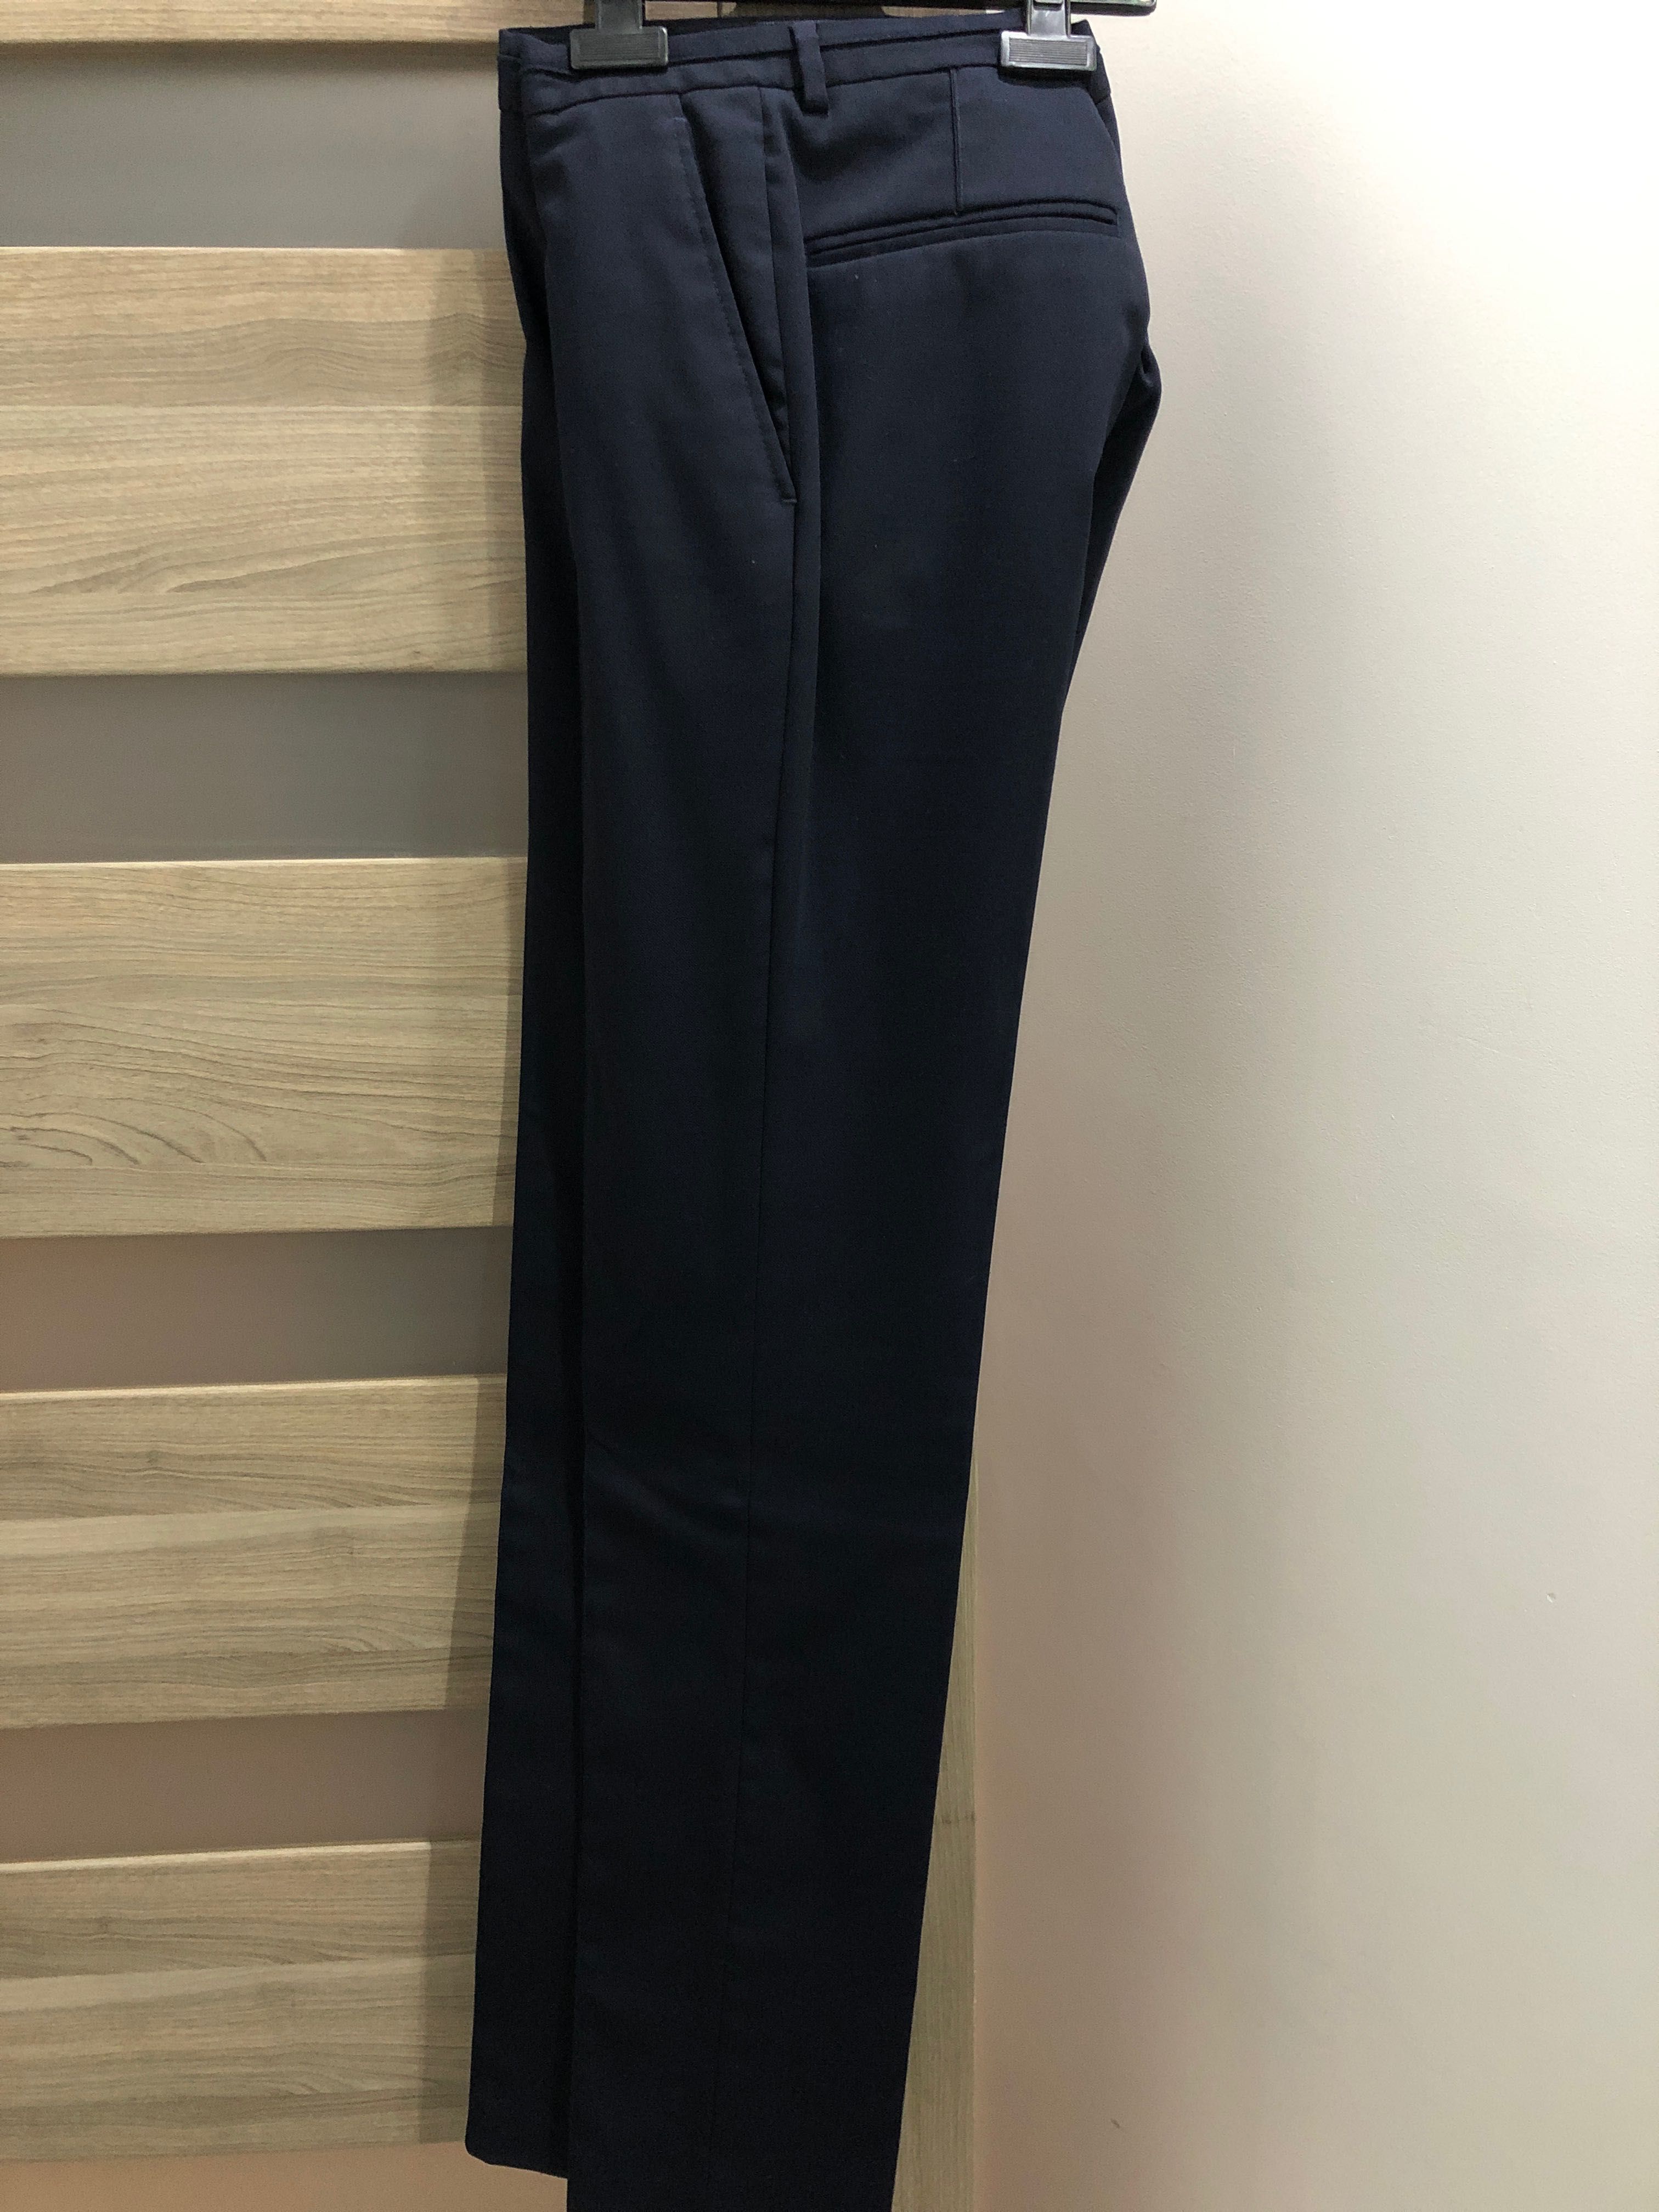 Spodnie męskie od garnituru | Zara